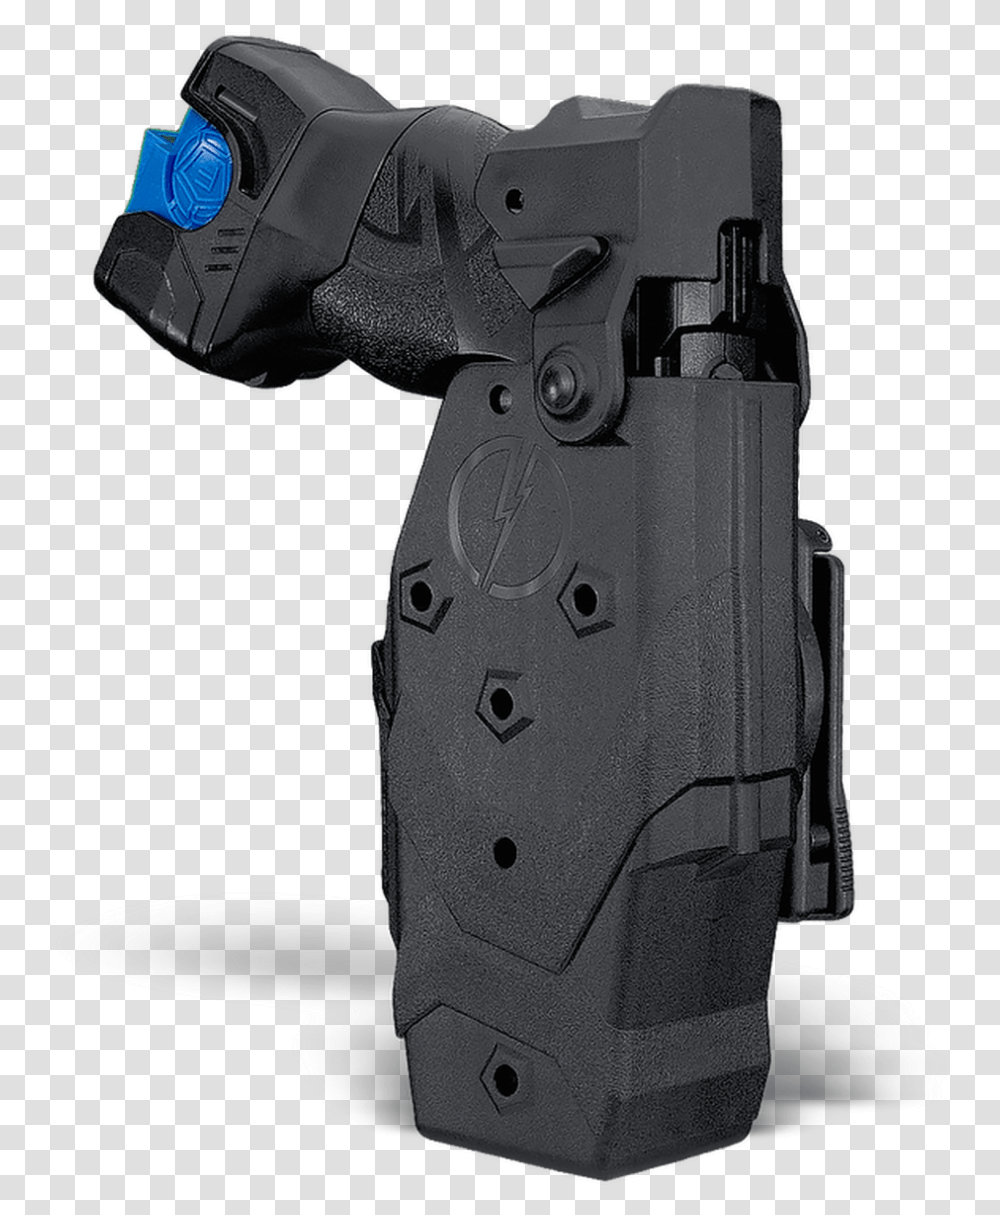 Blade Tech Taser Holster, Weapon, Gun, Projector Transparent Png